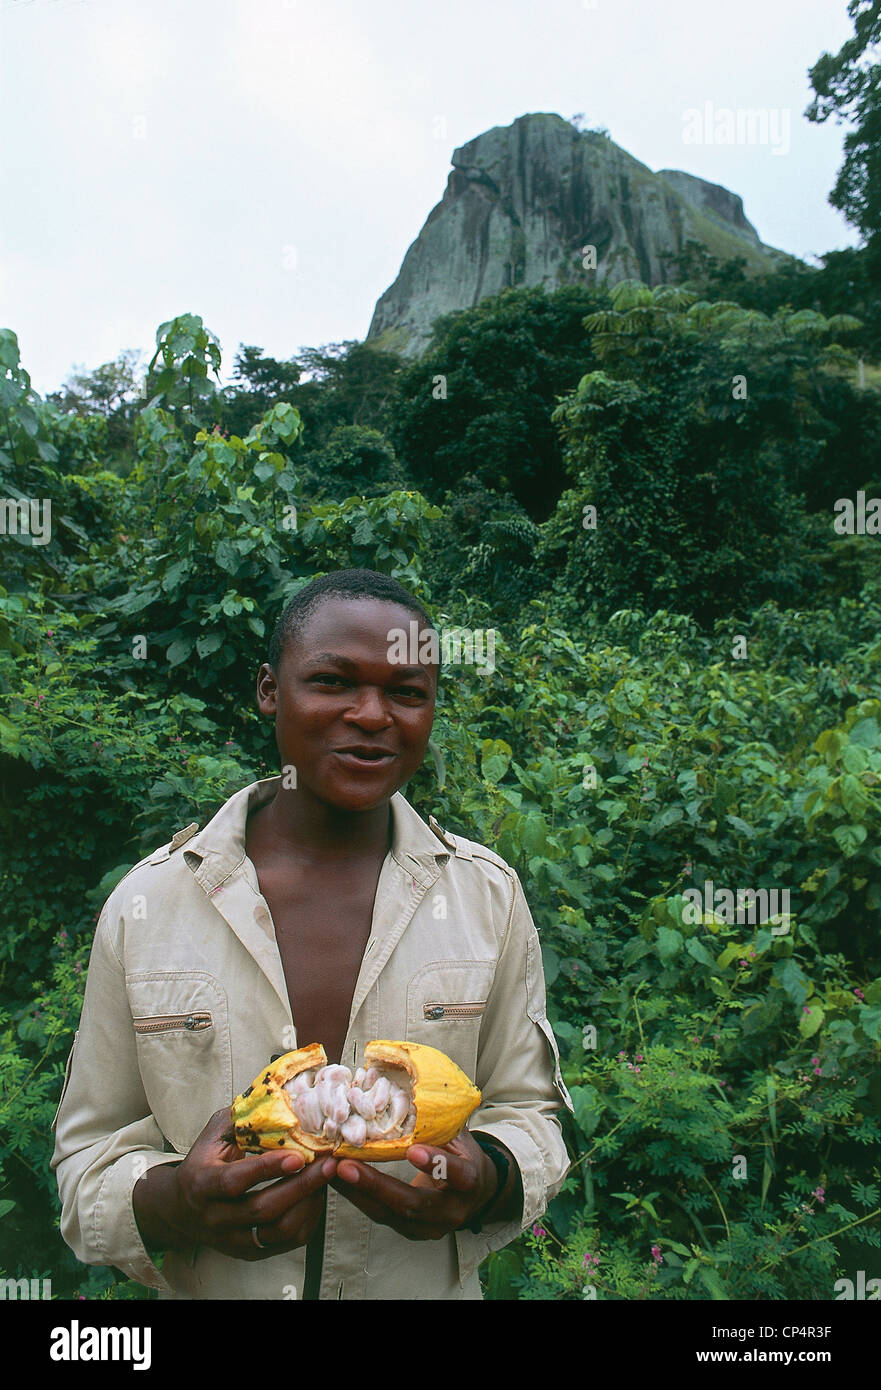 Région du Sud Cameroun Ebolowa. L'homme avec des fruits de cacao, sur fond d'AKO Akas falaise qui s'élève dans les forêts tropicales Banque D'Images